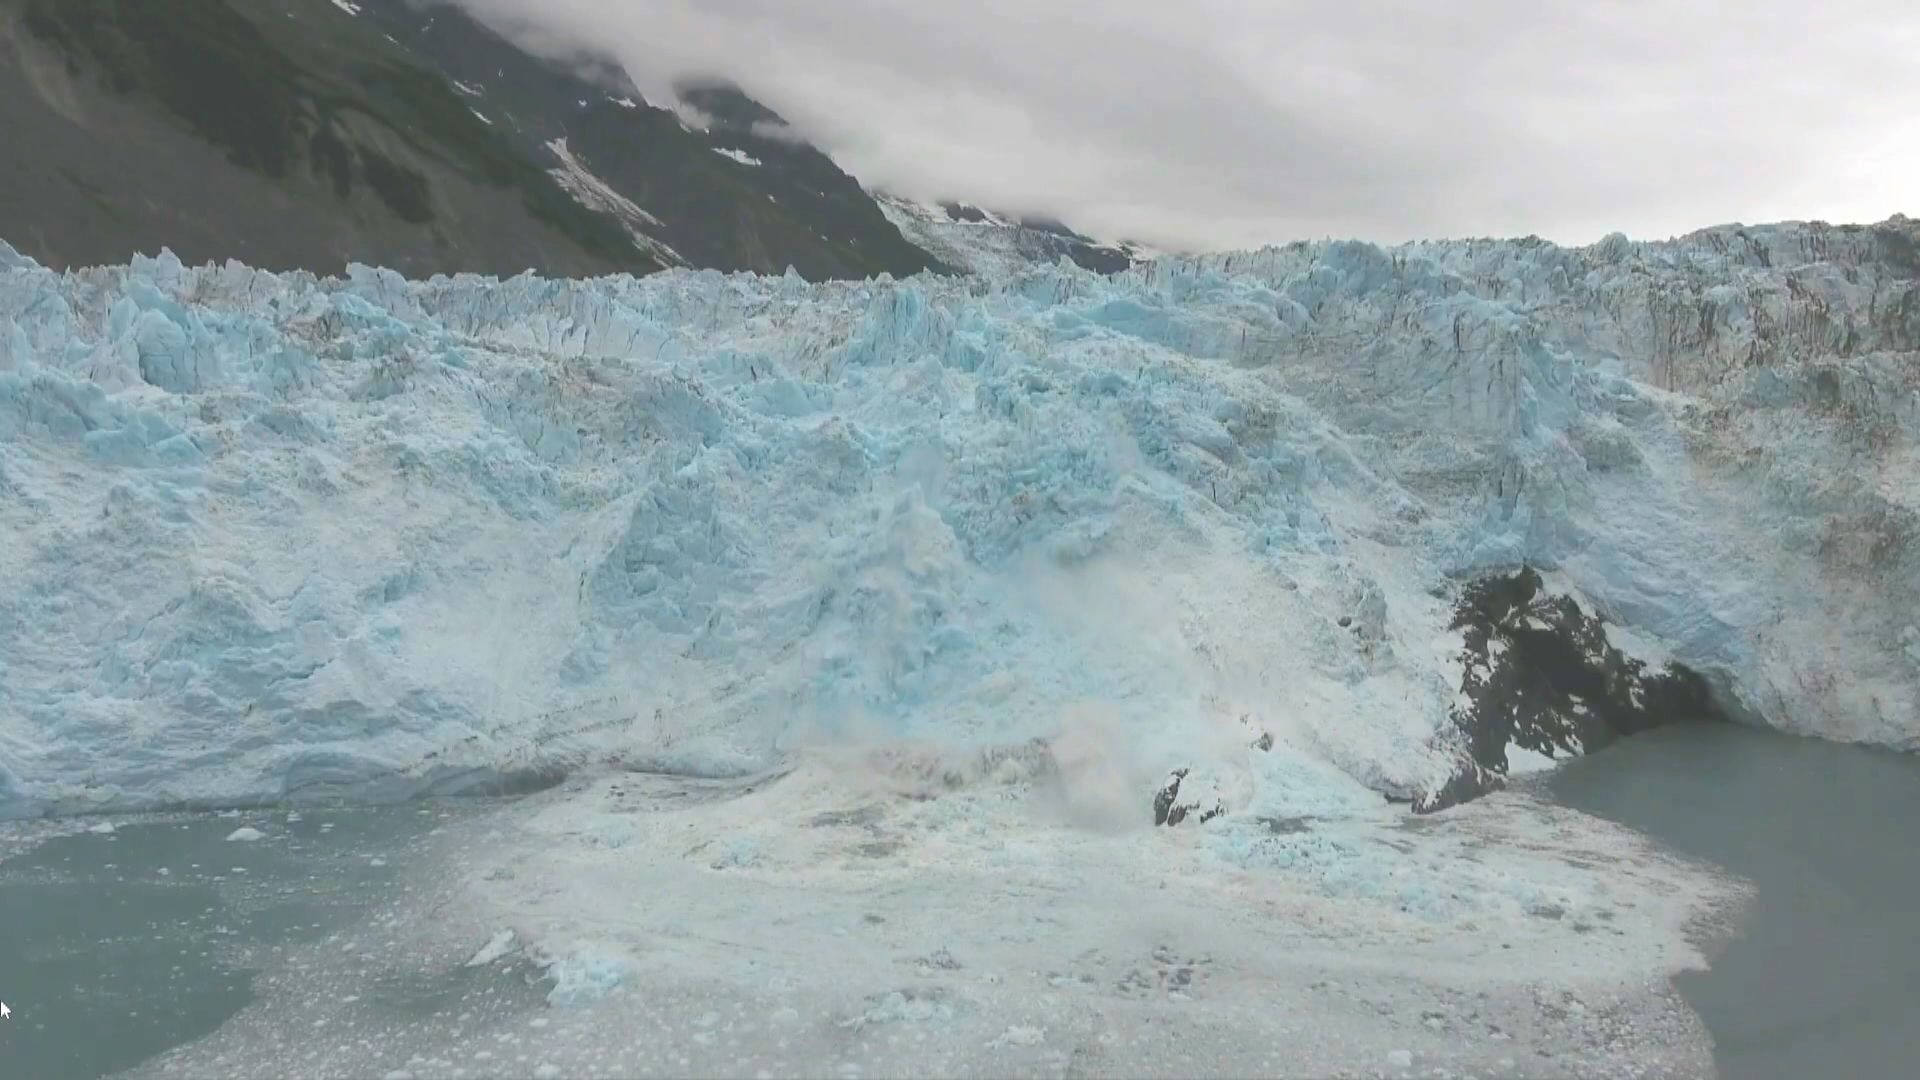 【環球薈報】科學家警告高山冰川融化或引發大海嘯